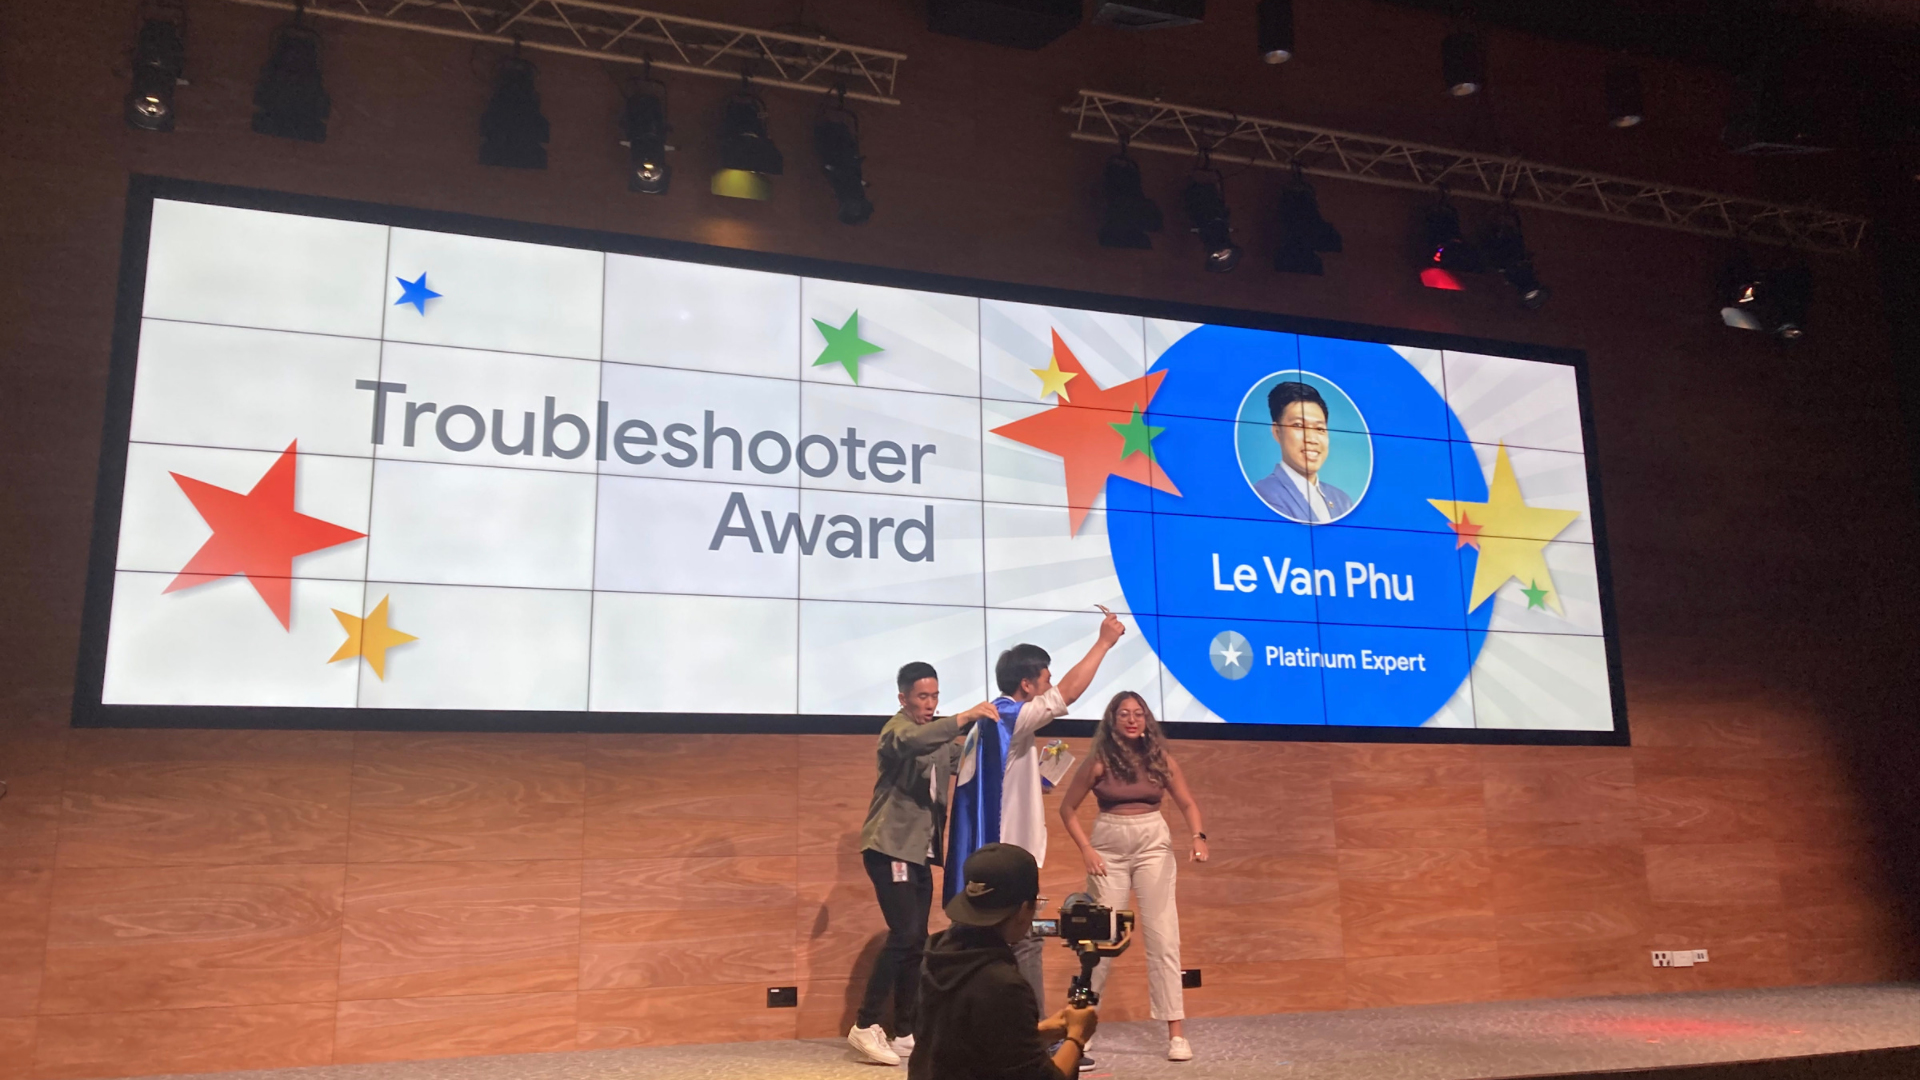 Troubleshooter Award